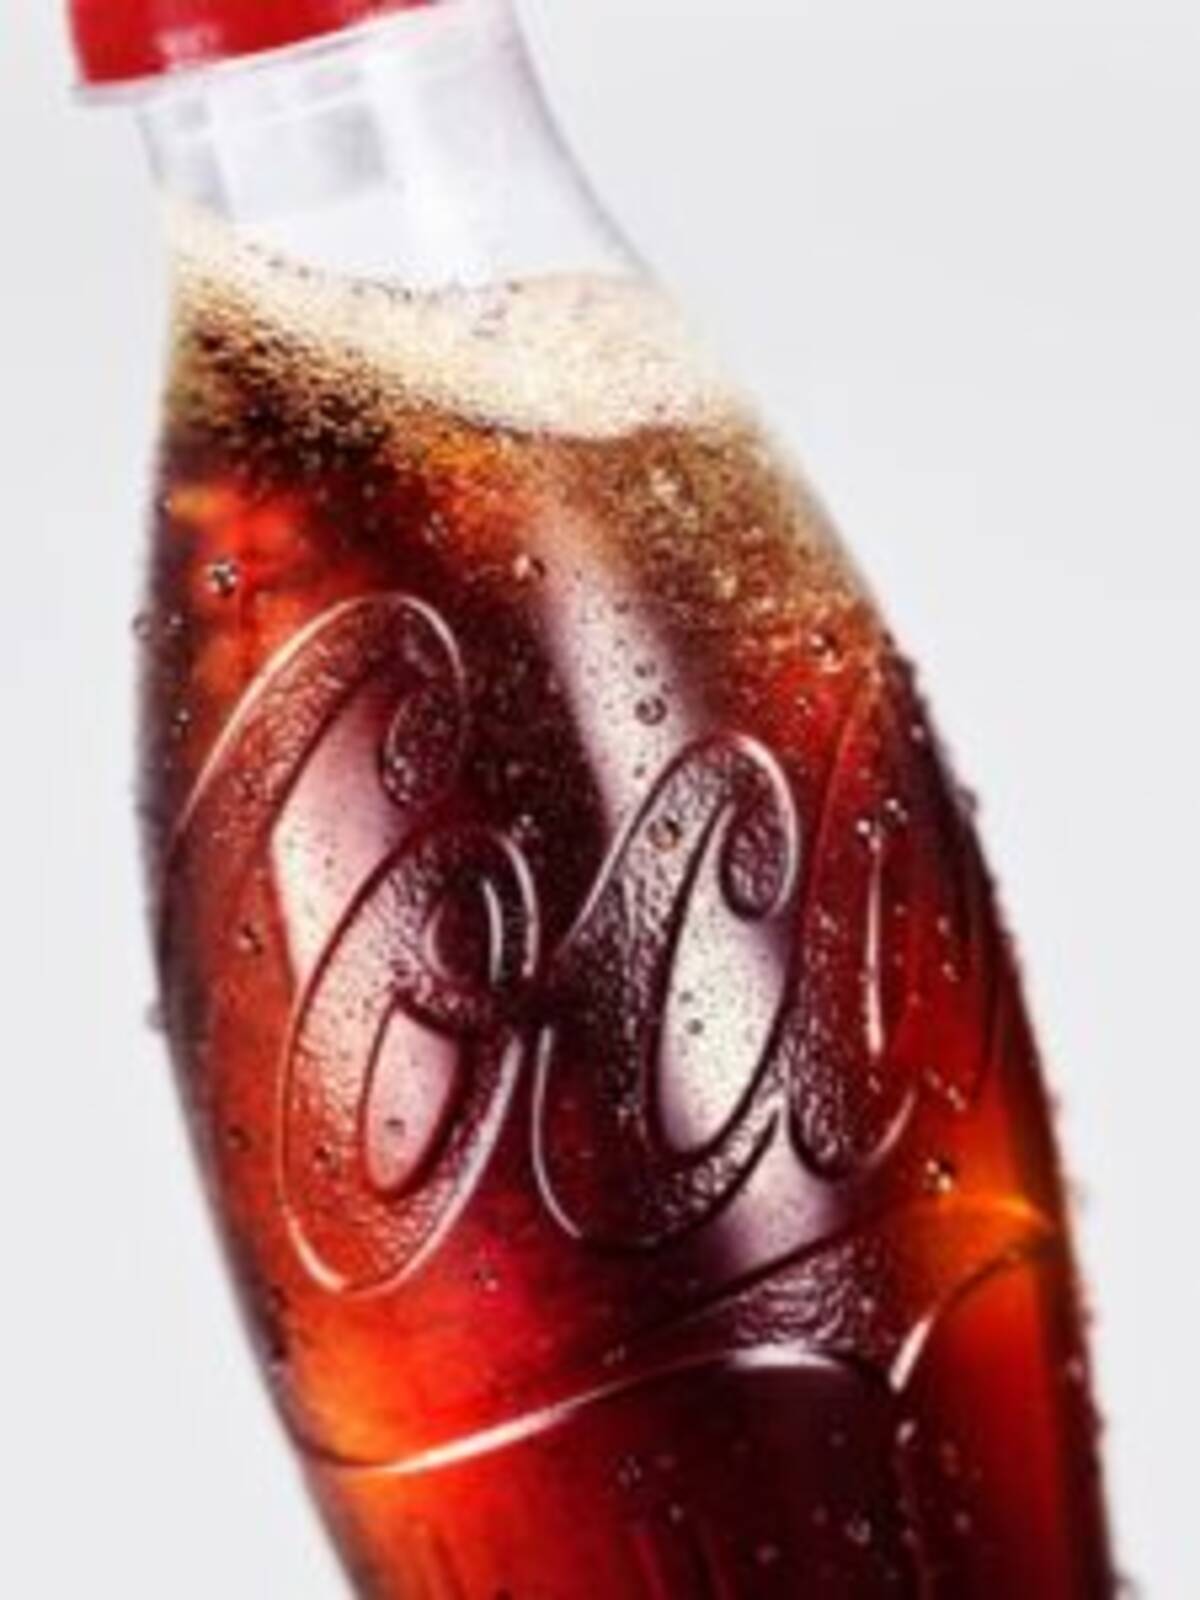 コカ コーラ 新ラベルレスボトル登場 コンツアーボトルにサスティナビリティーの要素追加 100 リサイクルpet使用 22年4月7日 エキサイトニュース